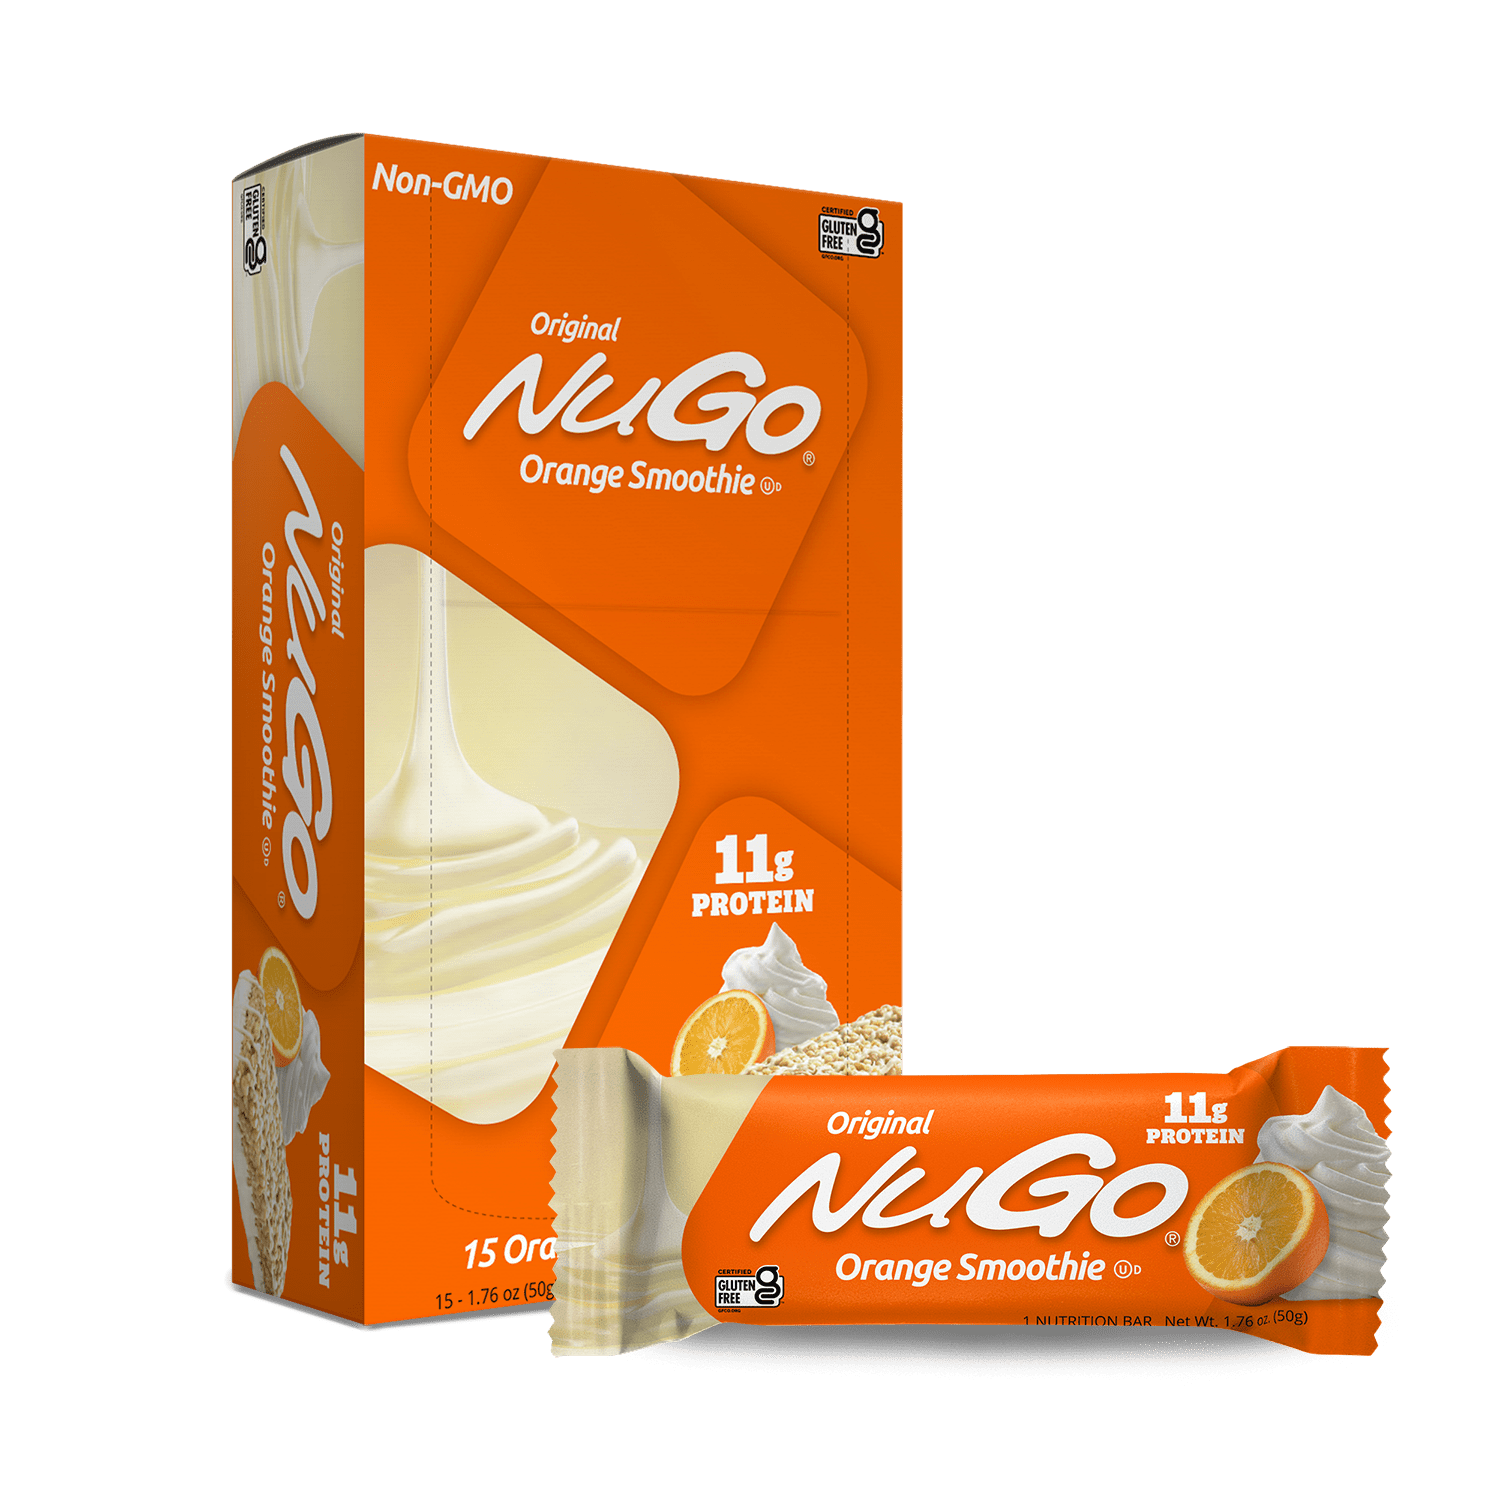 NuGo Original Orange Smoothie Bar and Box